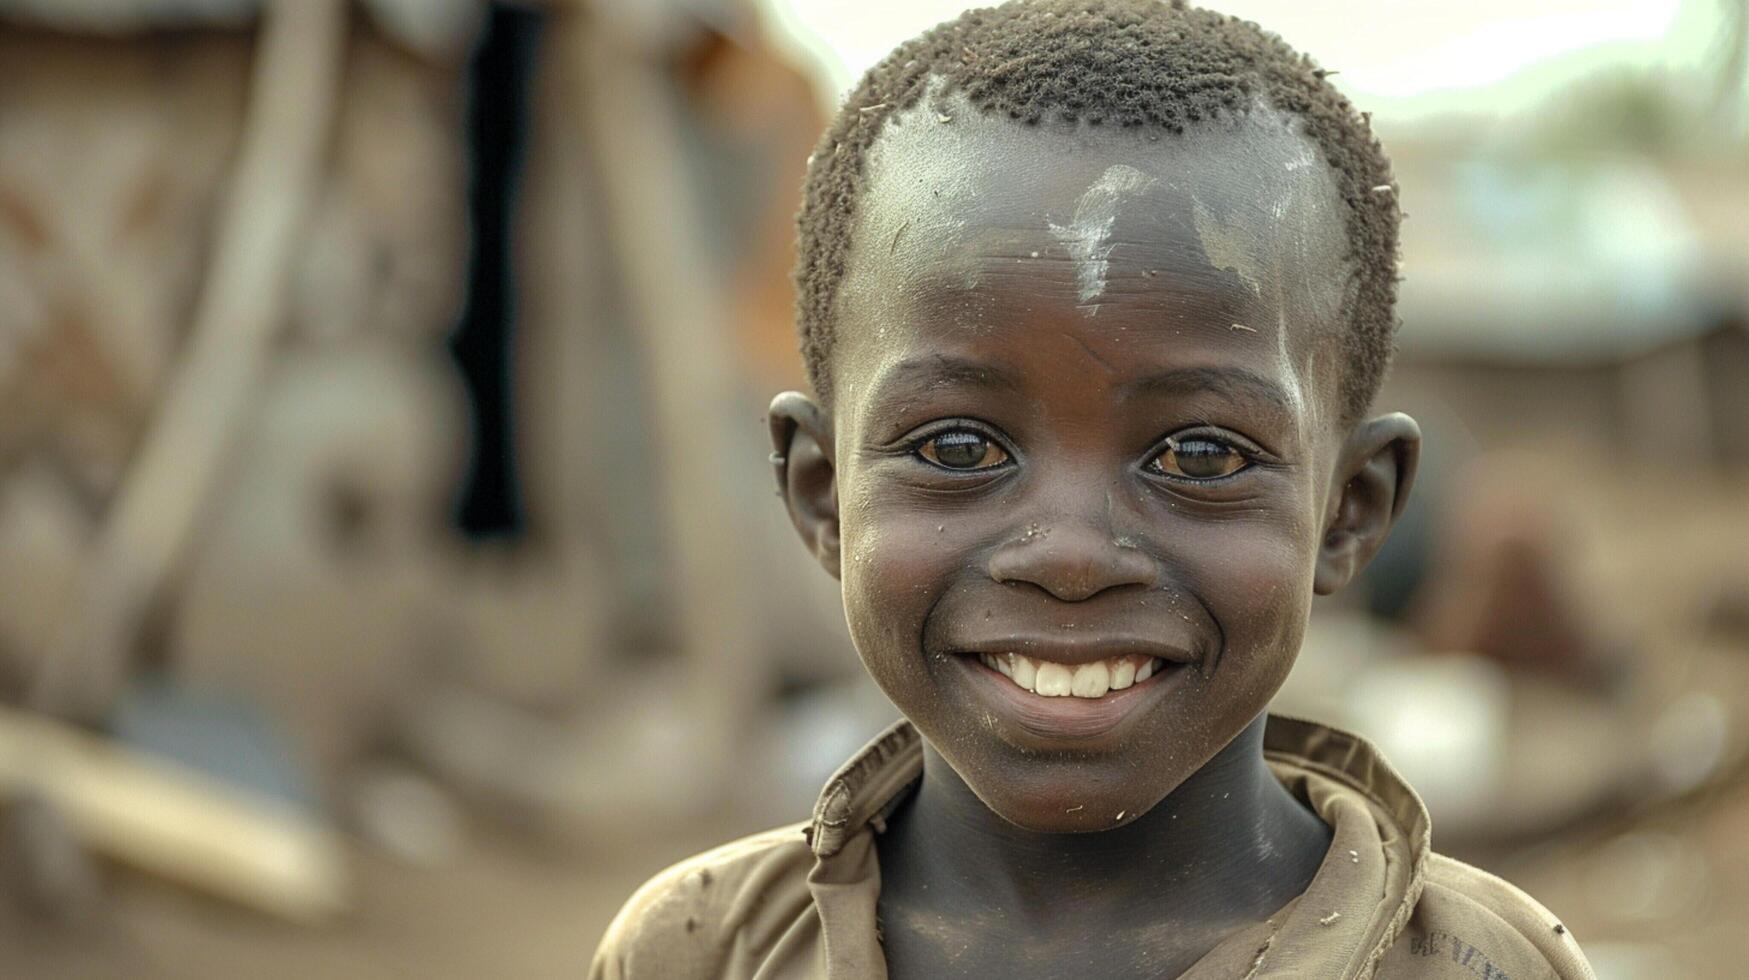 africano chico sonrisas A pesar de pobreza y soledad foto